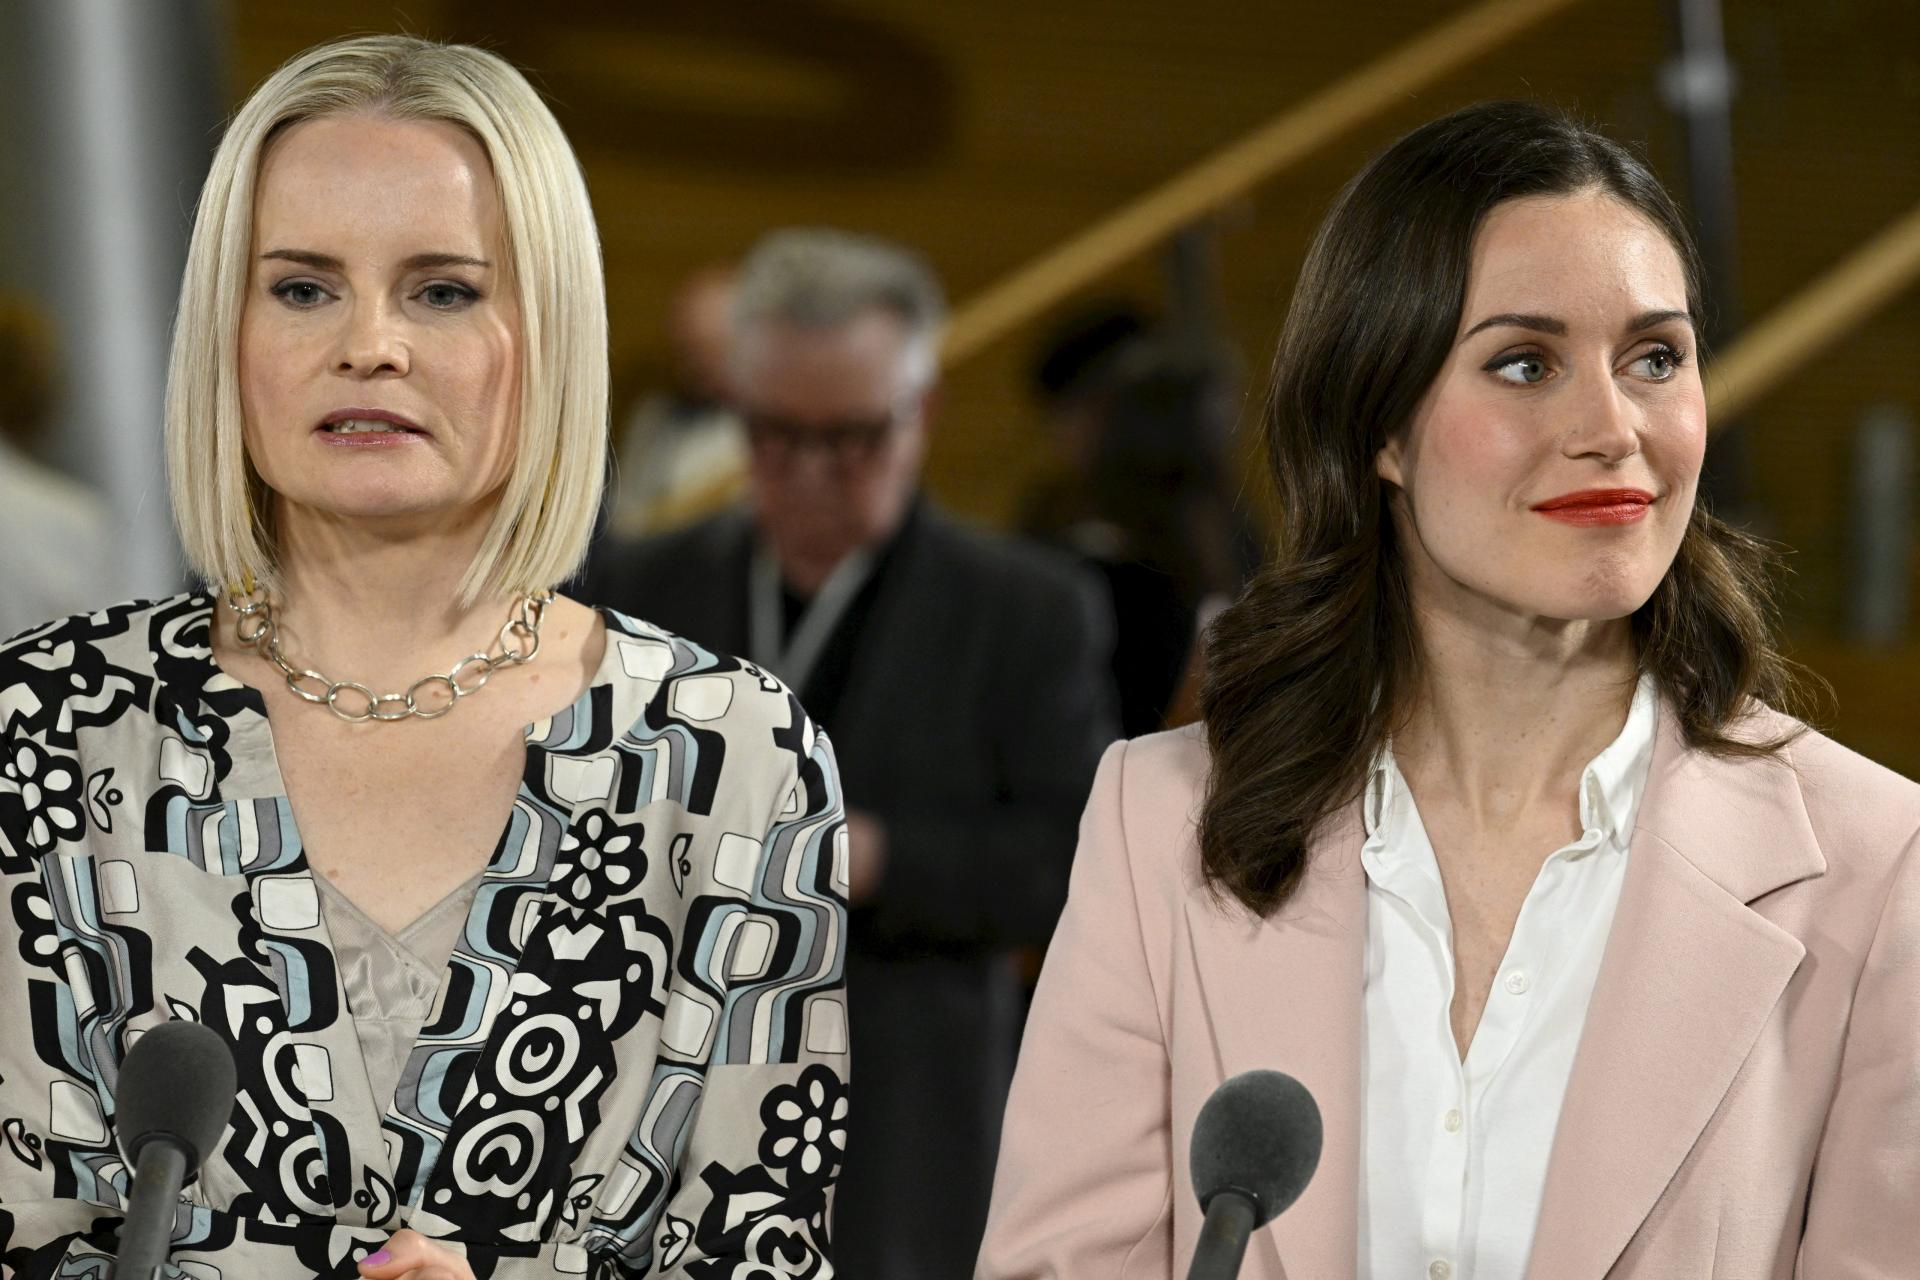 La reine finlandaise de TikTok a dominé les élections et veut rejoindre le gouvernement